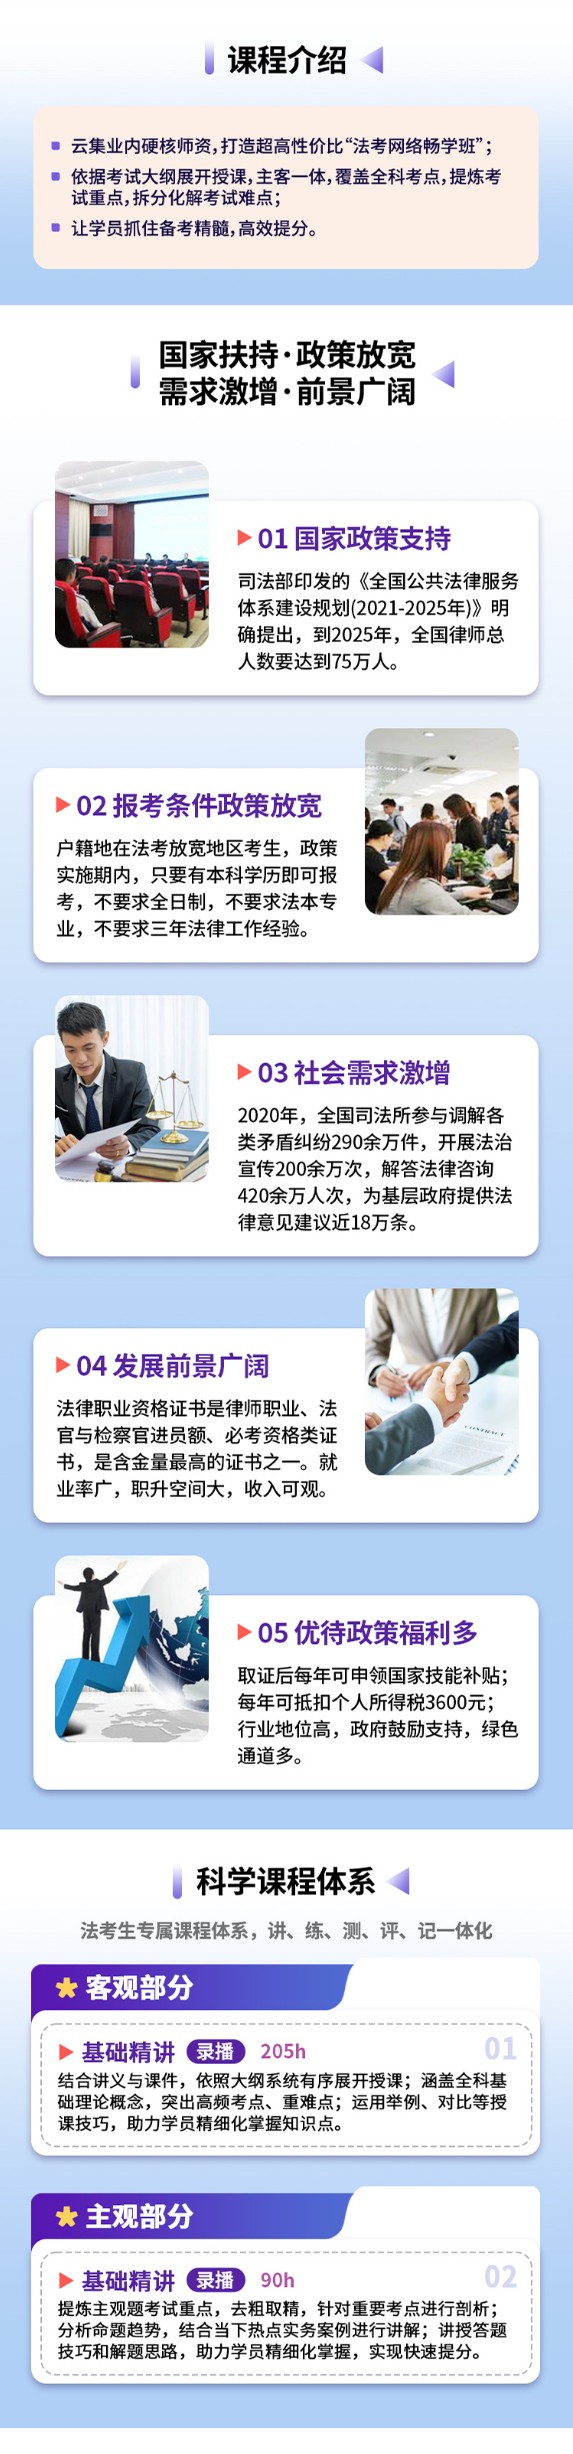 杭州法律职业资格考试培训线上课